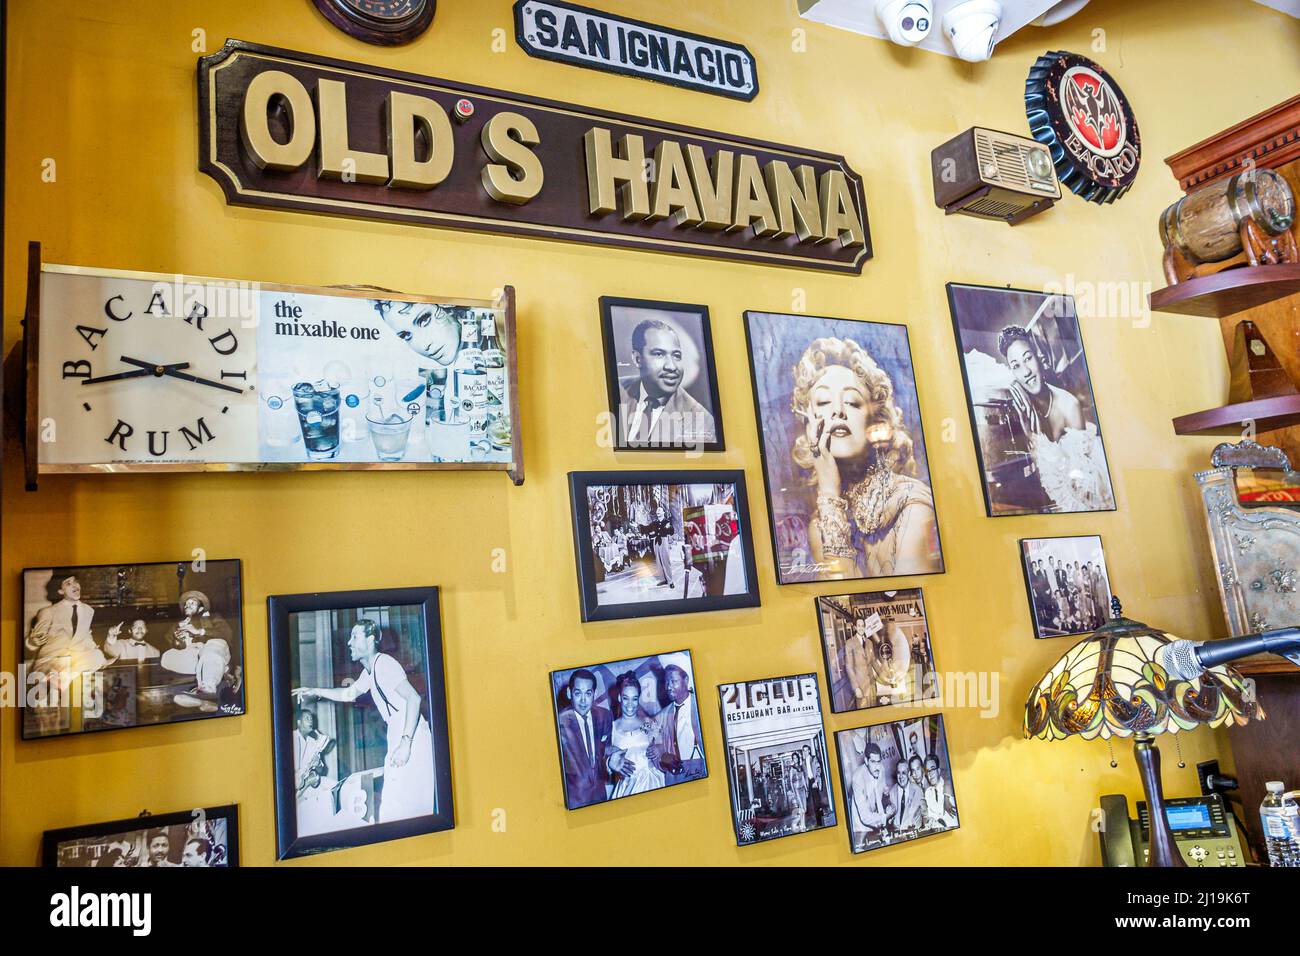 Little Havana Miami Florida Calle Ocho 8 8th Calle Barrio hispano cubano distrito histórico Old's Havana Cuban Bar & Cocina restaurante dentro Foto de stock